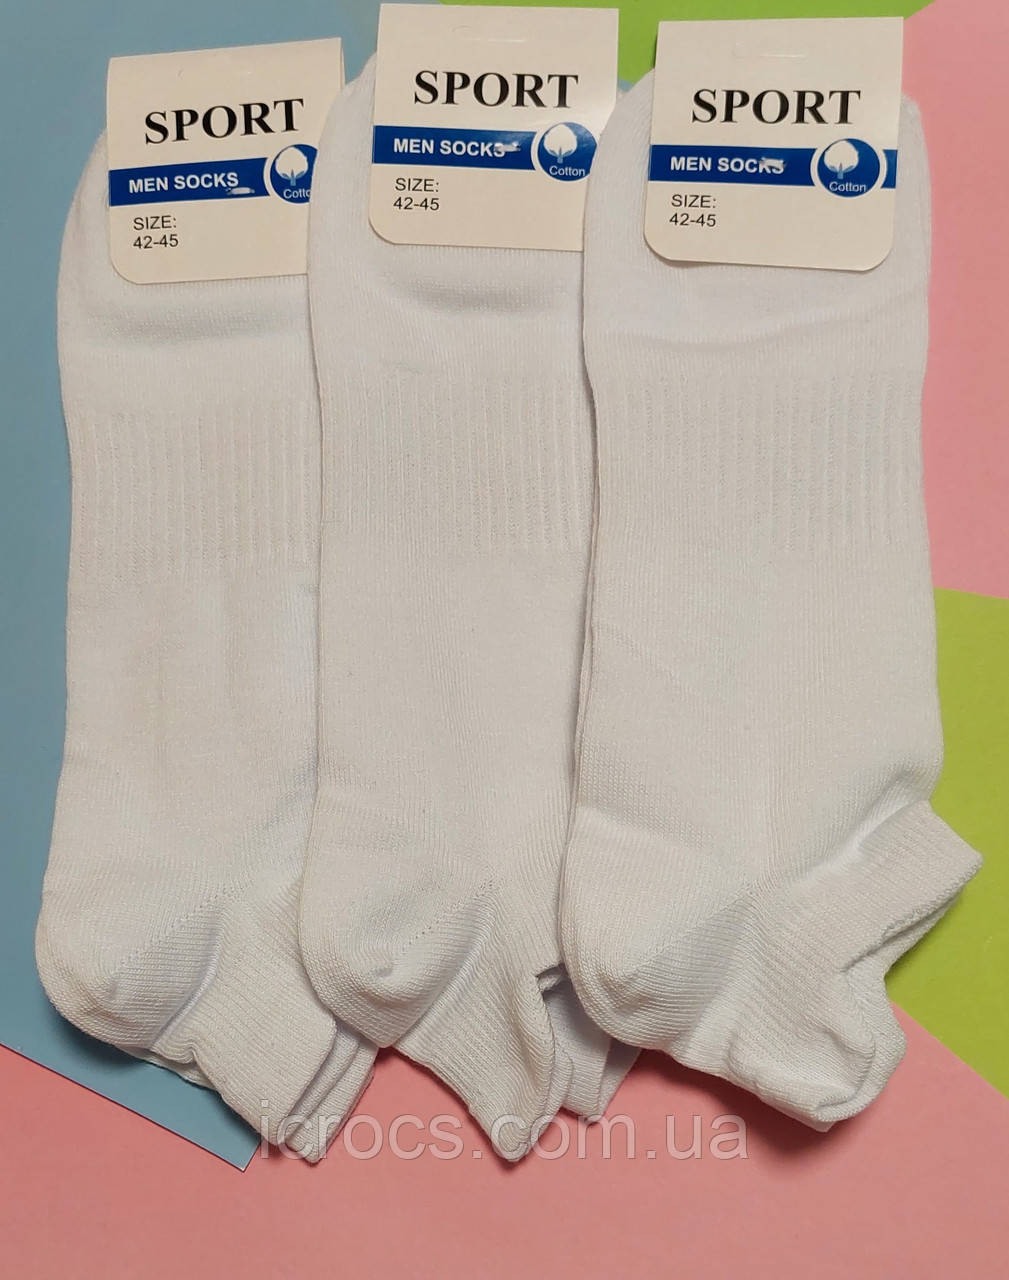 Шкарпетки SPORT 42-45 розмір 6 пар білі щільні бавовна комплект упаковка чоловічі спортивні коттон спорт